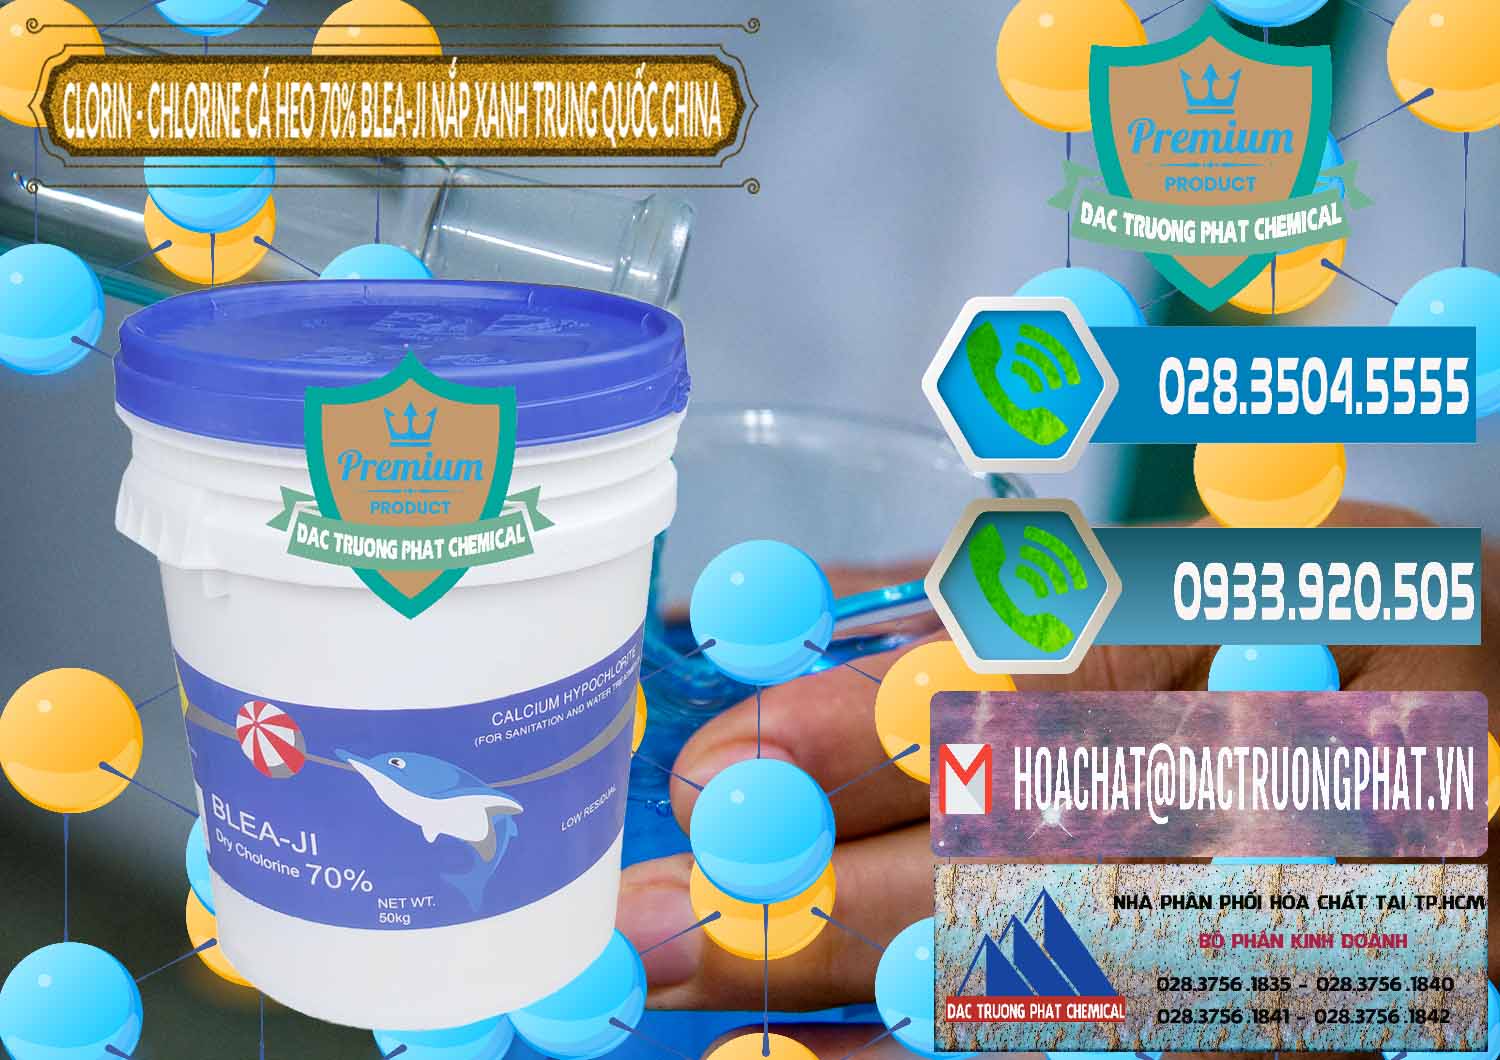 Nơi chuyên phân phối _ bán Clorin - Chlorine Cá Heo 70% Cá Heo Blea-Ji Thùng Tròn Nắp Xanh Trung Quốc China - 0208 - Đơn vị bán ( phân phối ) hóa chất tại TP.HCM - congtyhoachat.net